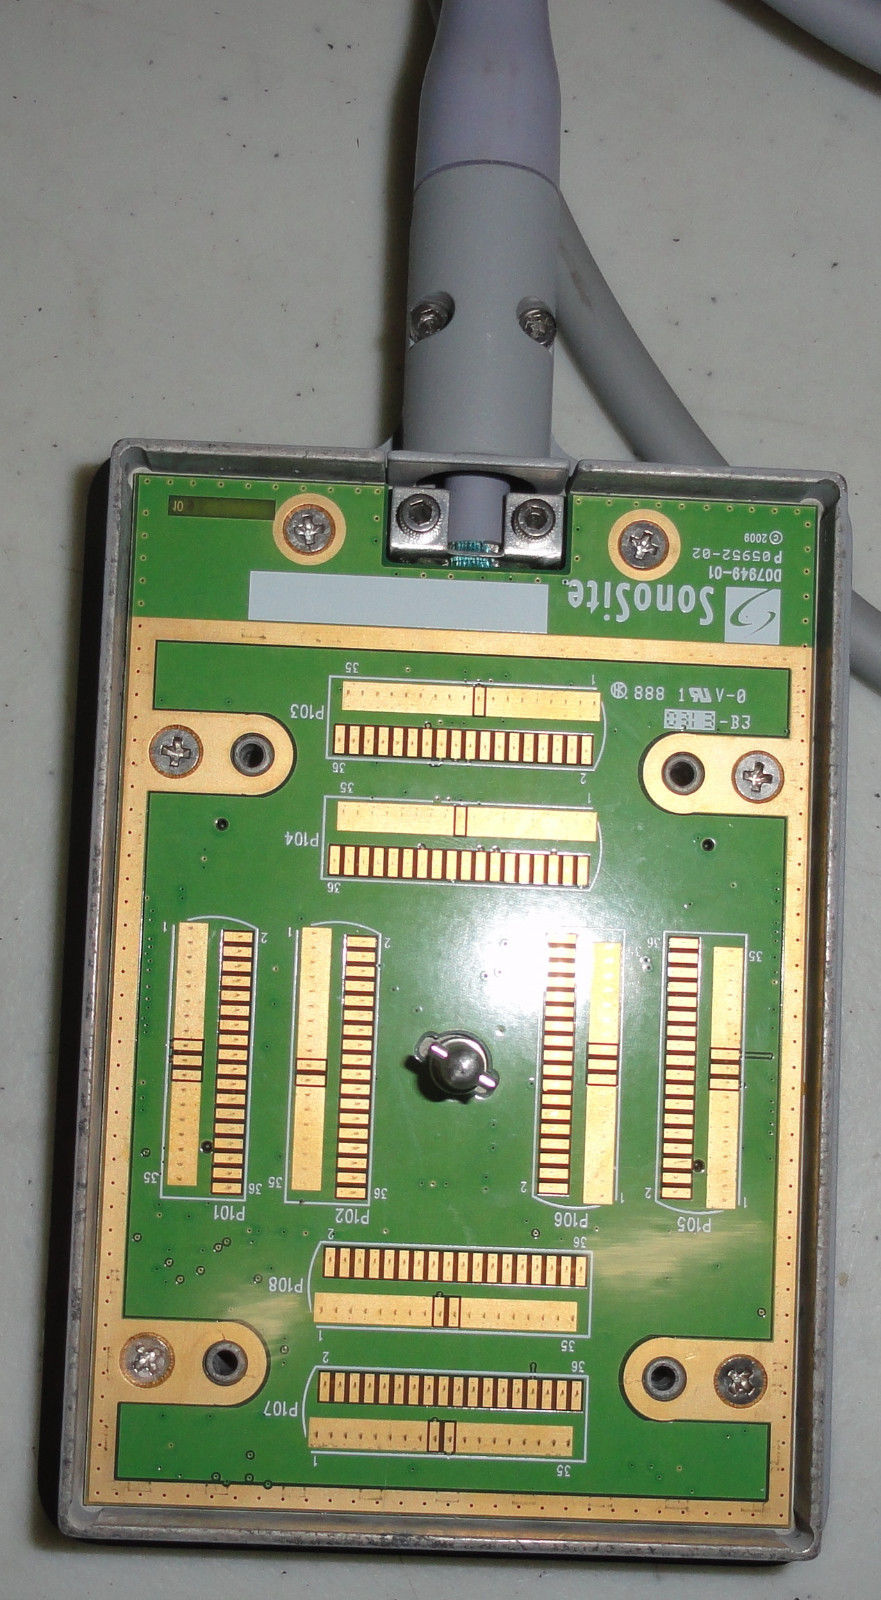 2013 SonoSite MicroMaxx L25e 13-6 MHz Ultrasound Transducer Probe DIAGNOSTIC ULTRASOUND MACHINES FOR SALE